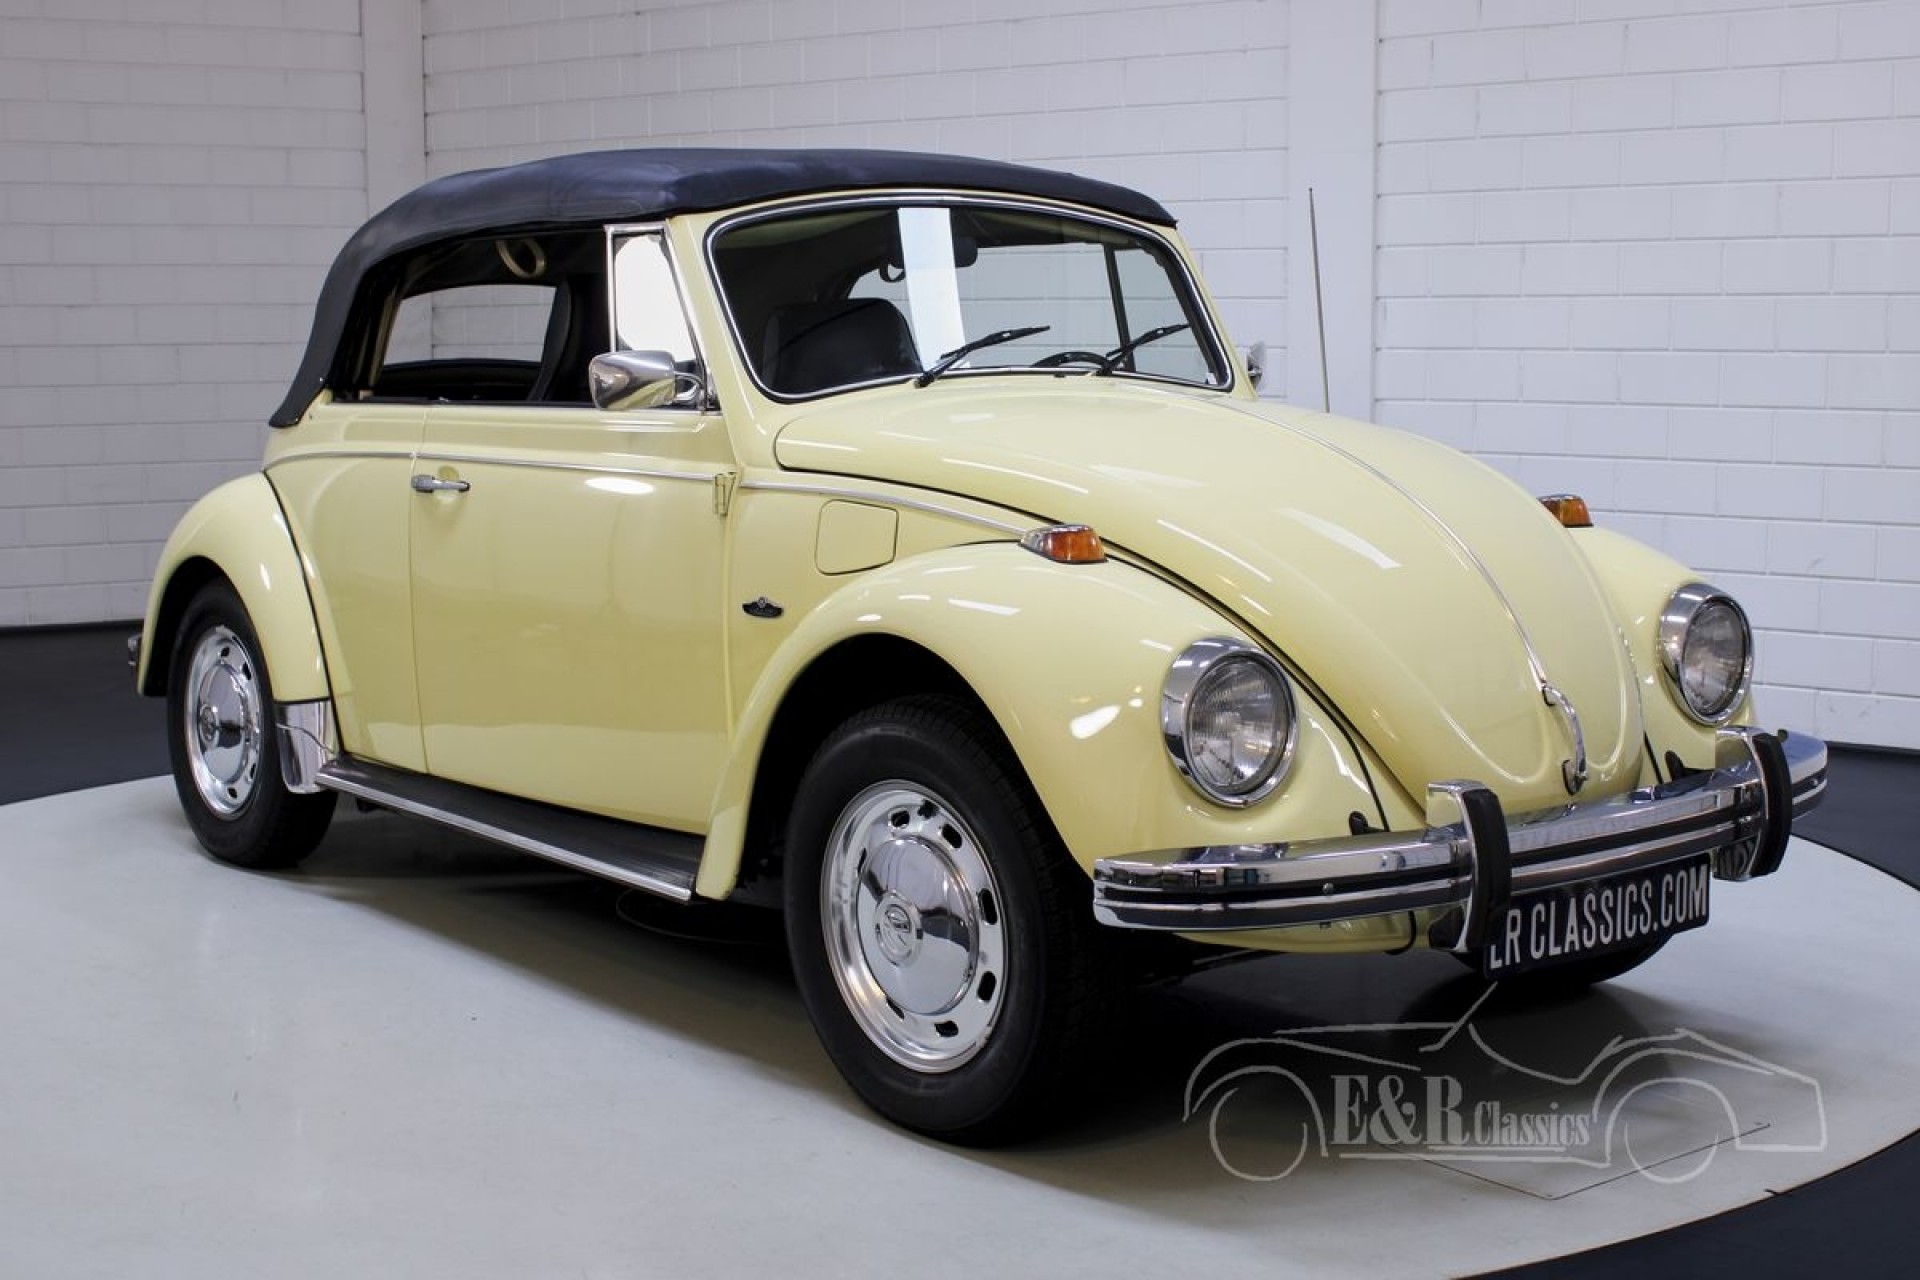 Afscheiden Vreemdeling De andere dag Volkswagen Beetle for sale at ERclassics